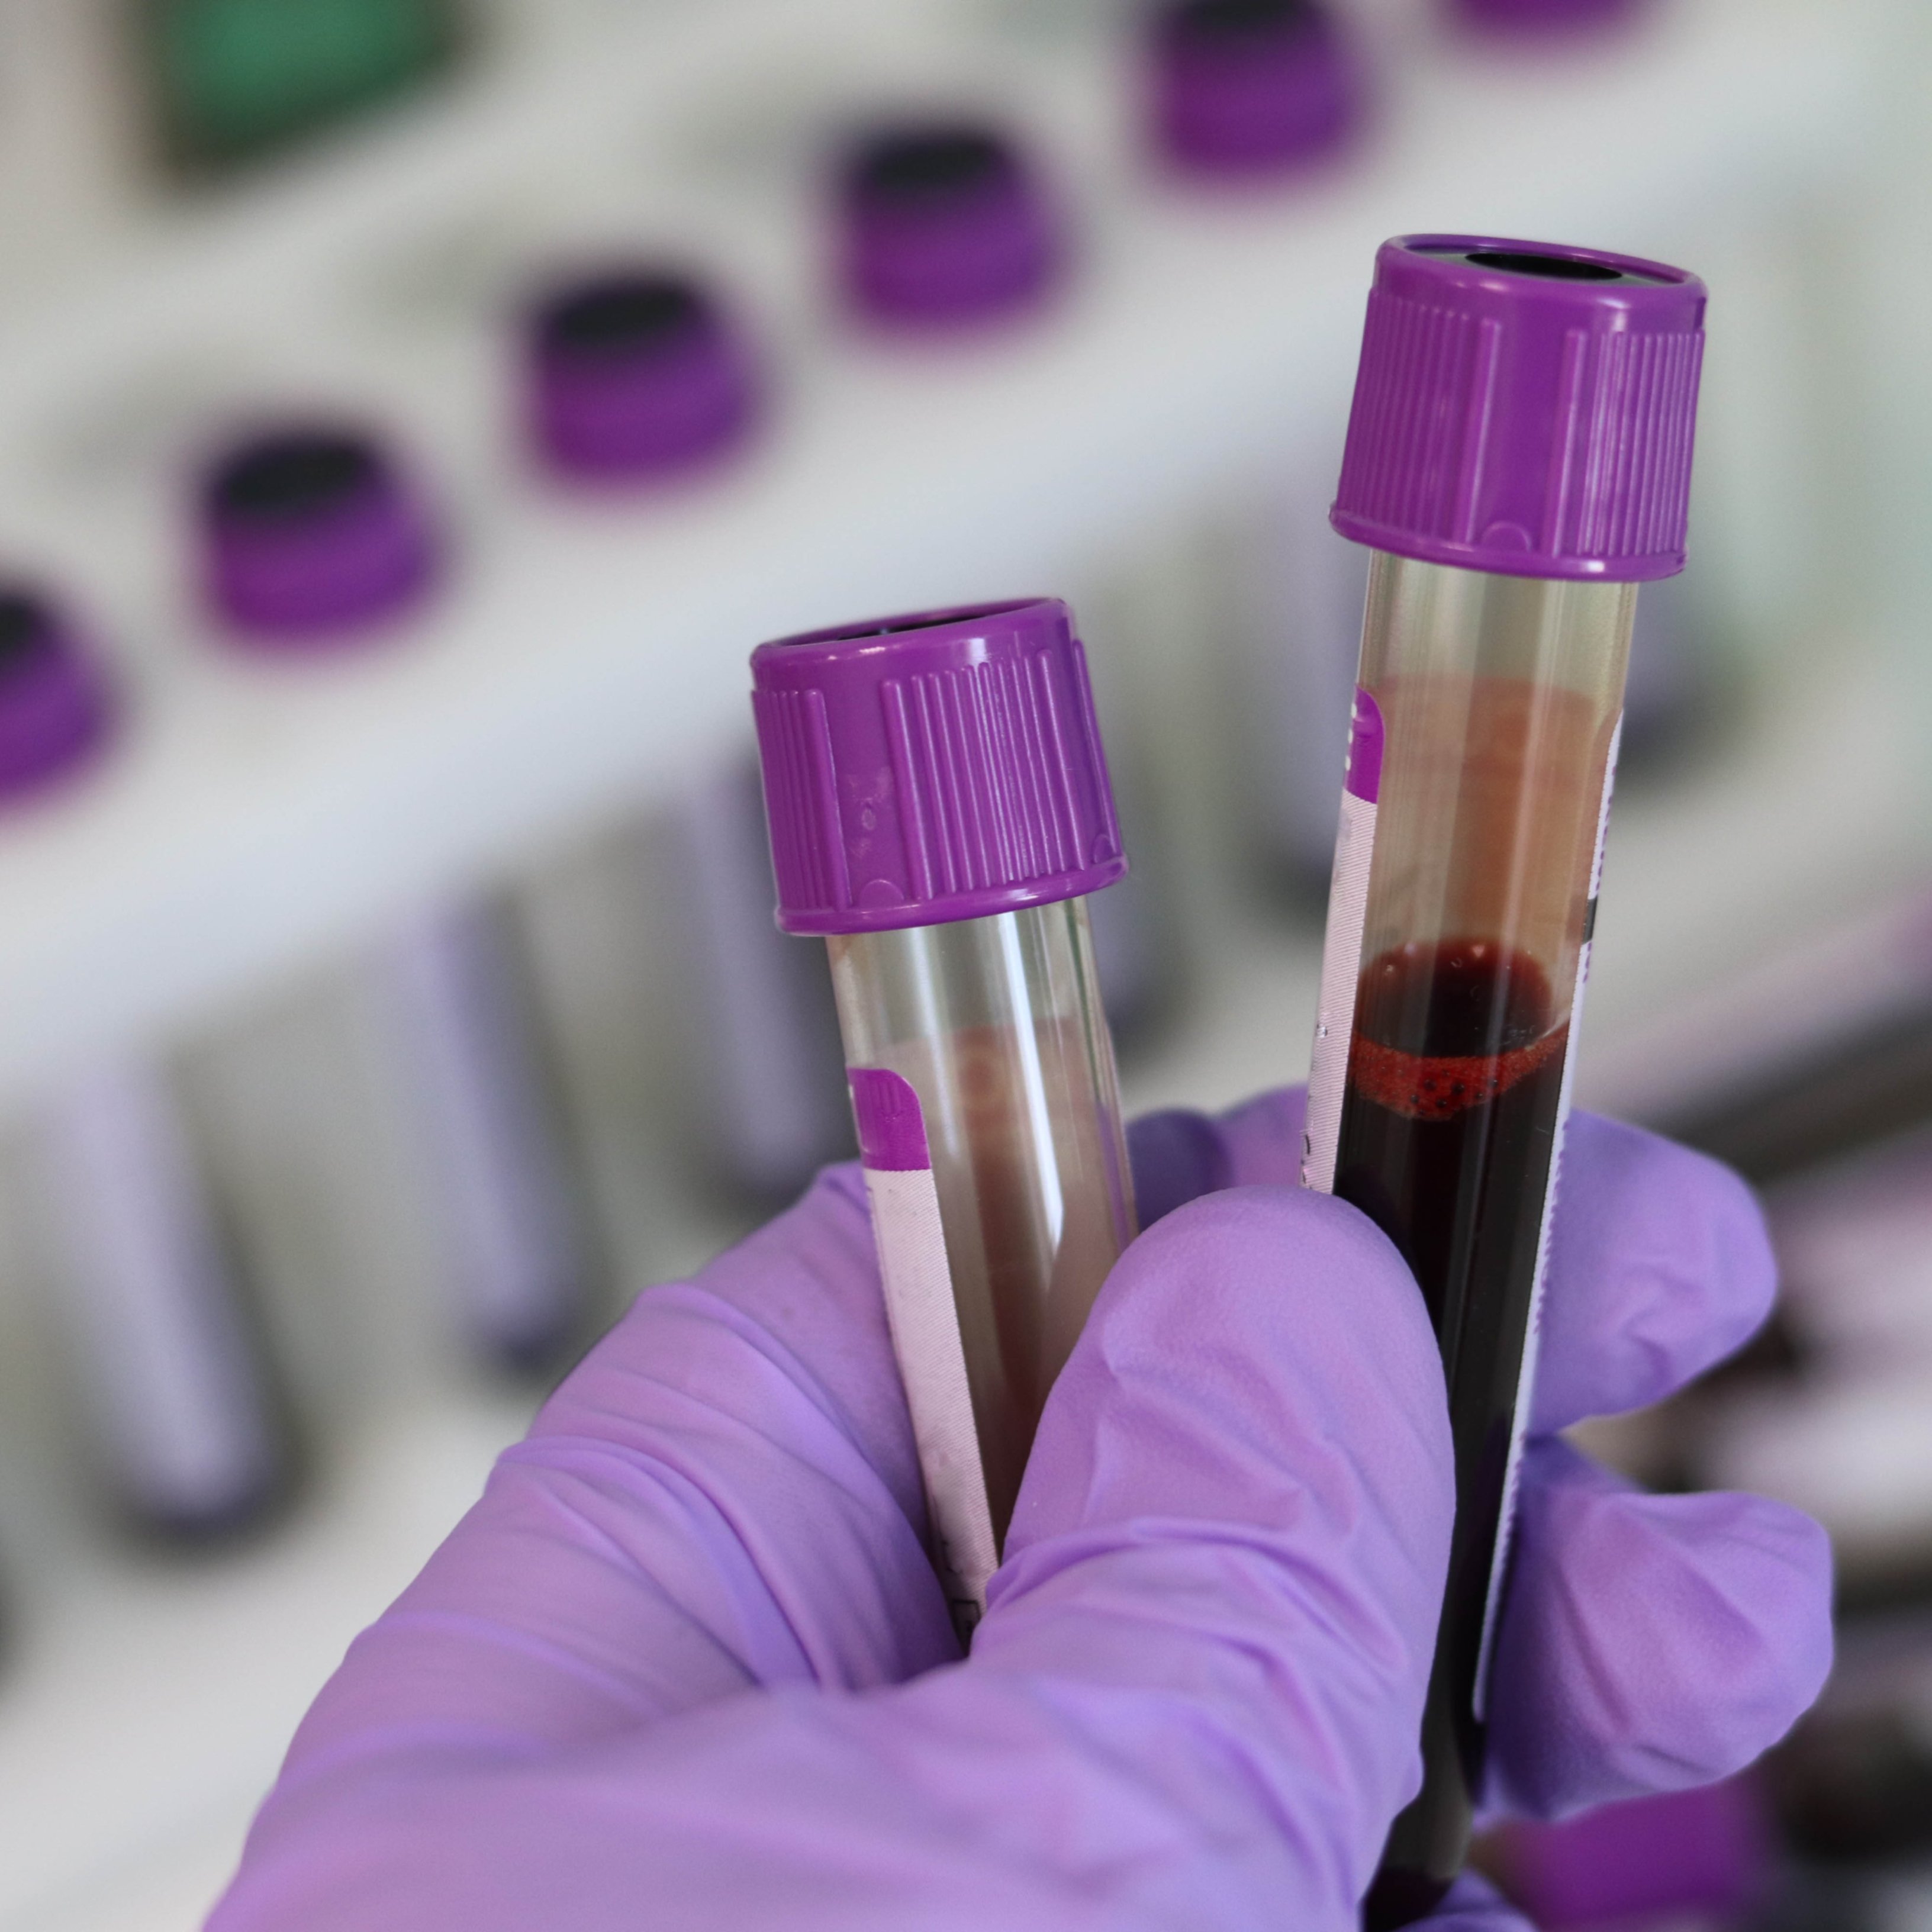 Un análisis de sangre podrá predecir la esperanza de vida de las personas